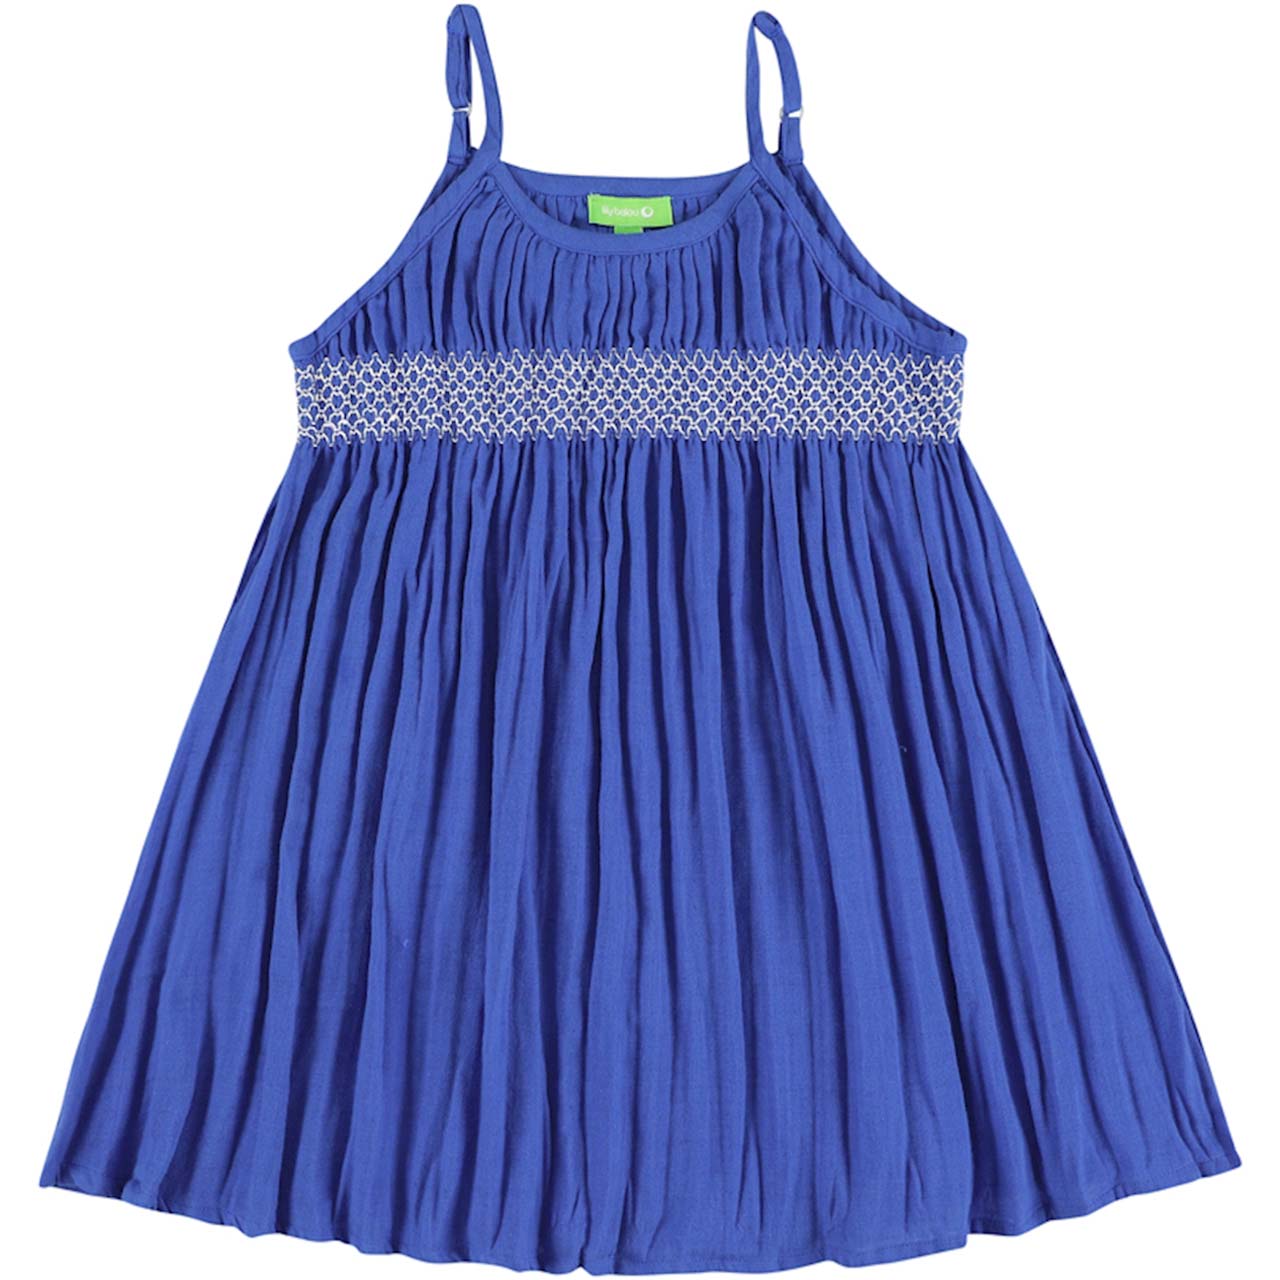 Sommer Kleid Musselin Spaghettiträger blau